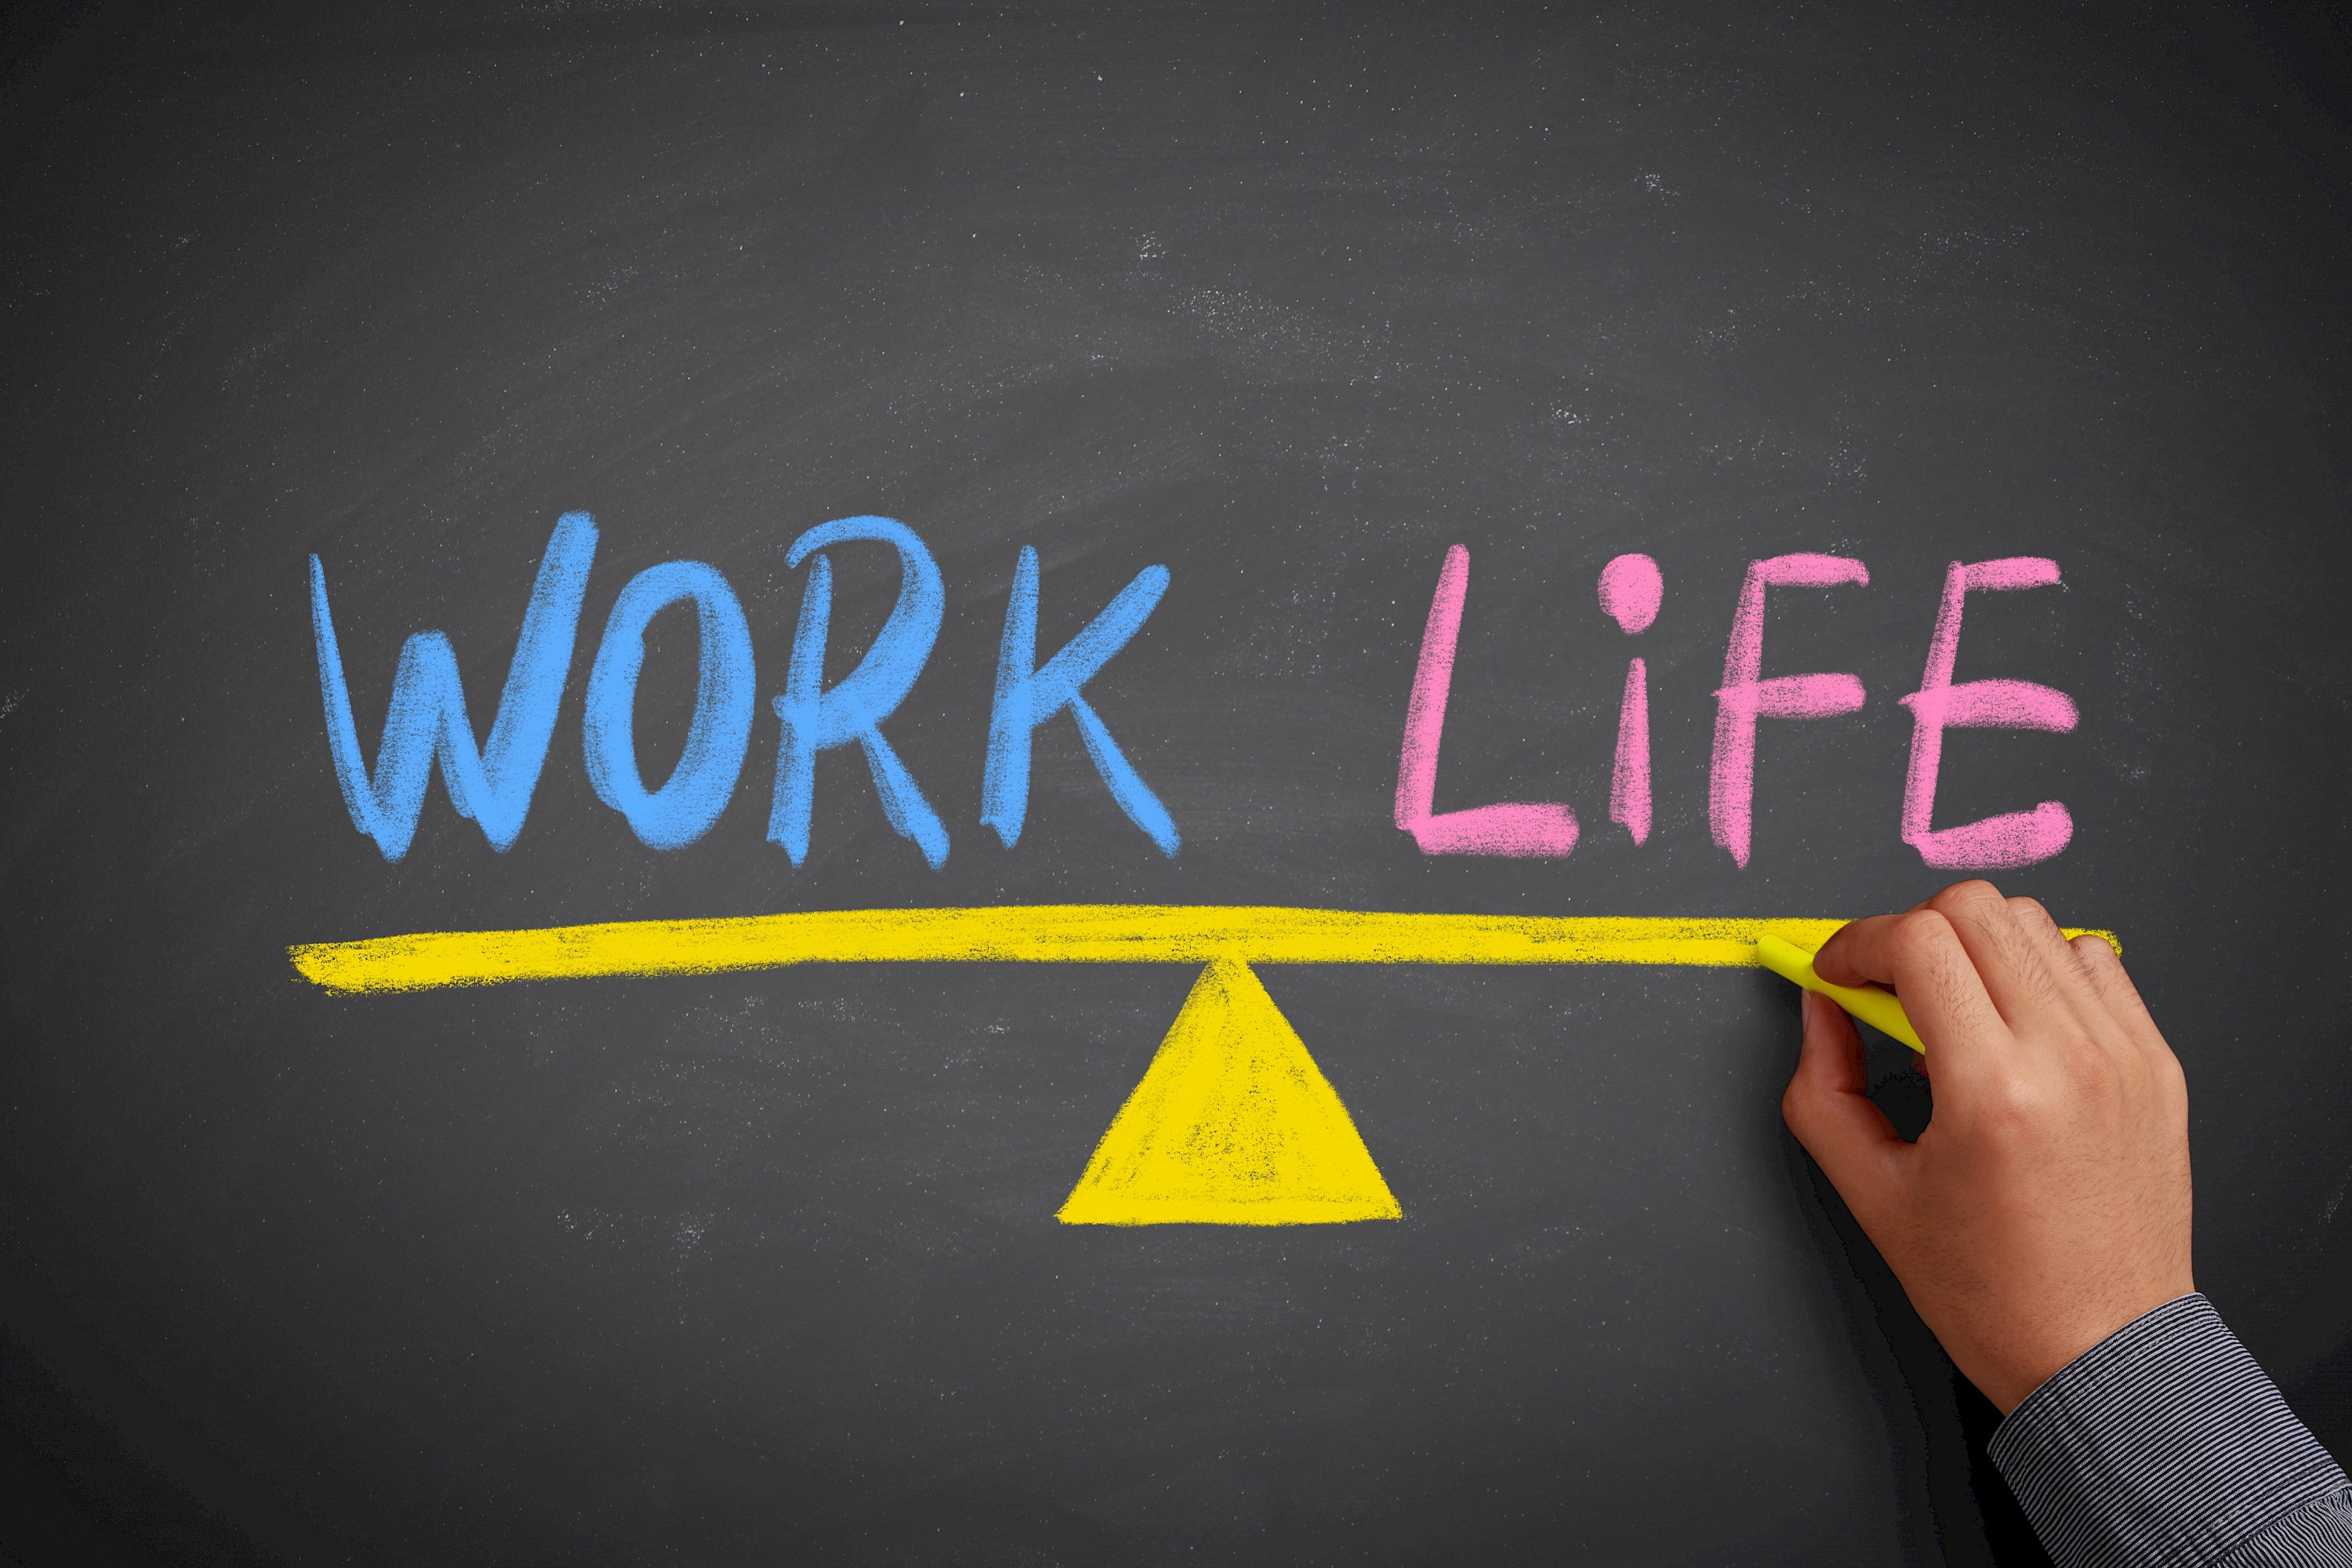 Life love work. Work-Life Balance. Баланс между работой и личной жизнью. Баланс между жизнью и учебой. Баланс работа жизнь.